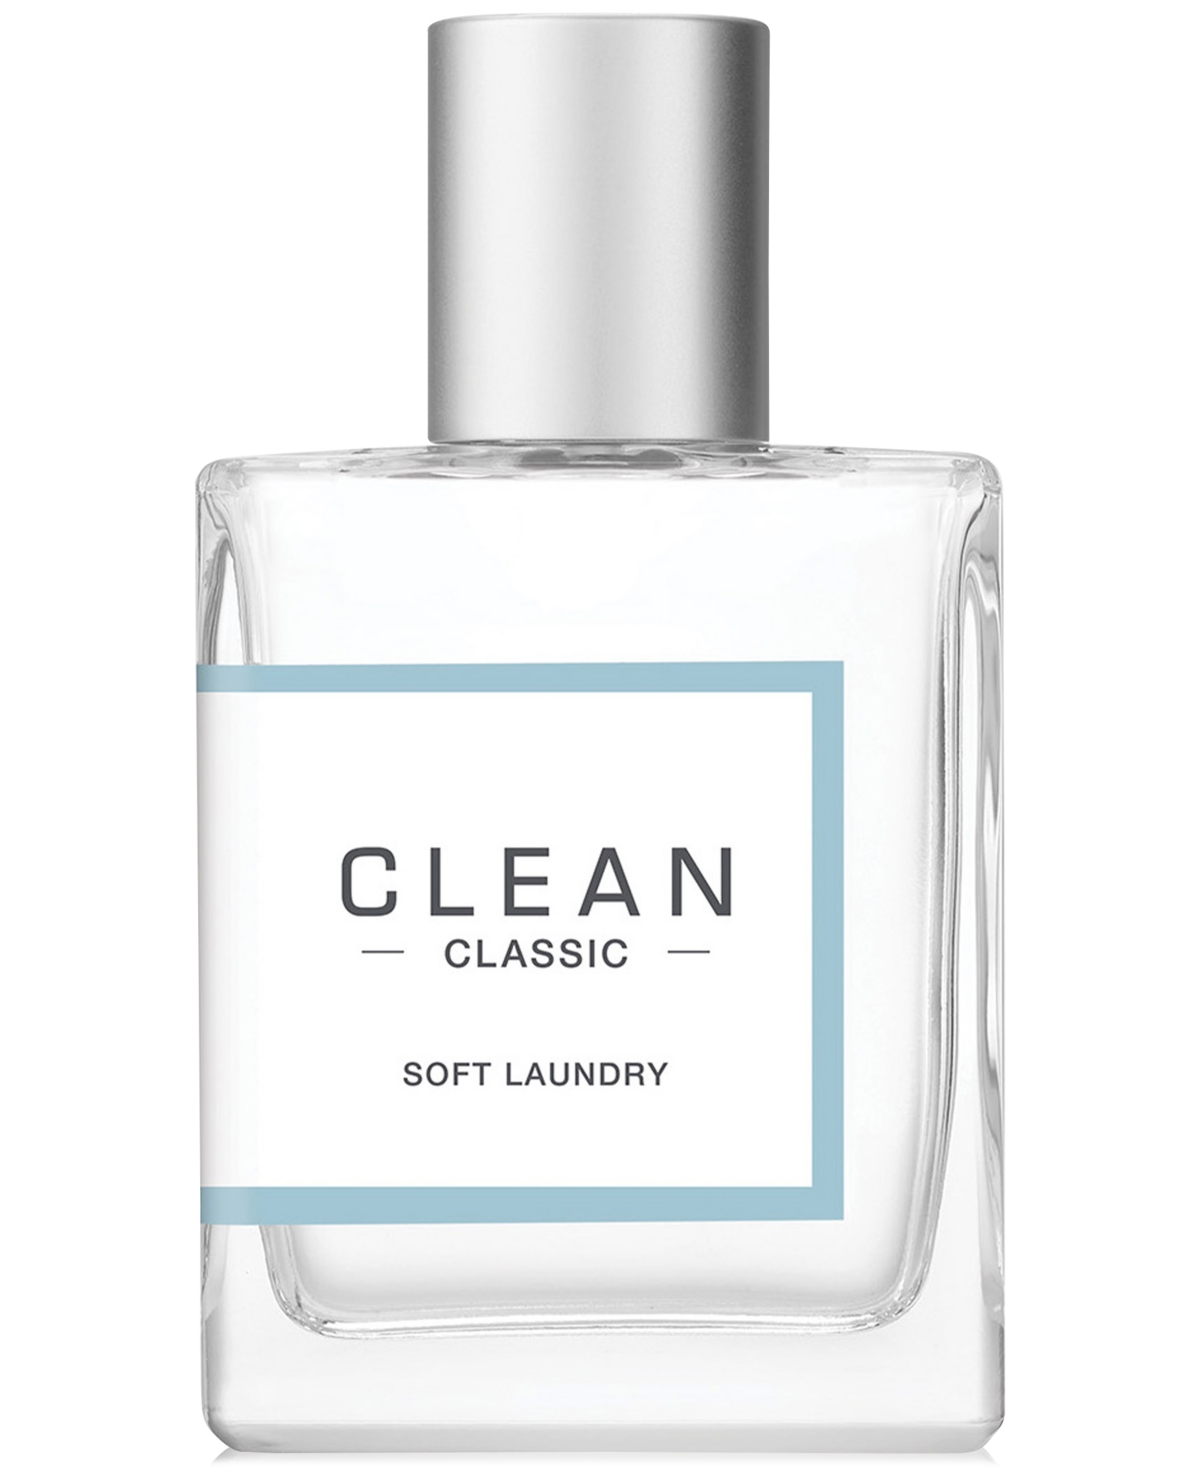 Classic Soft Laundry Eau De Parfum Spray, 1 fl oz